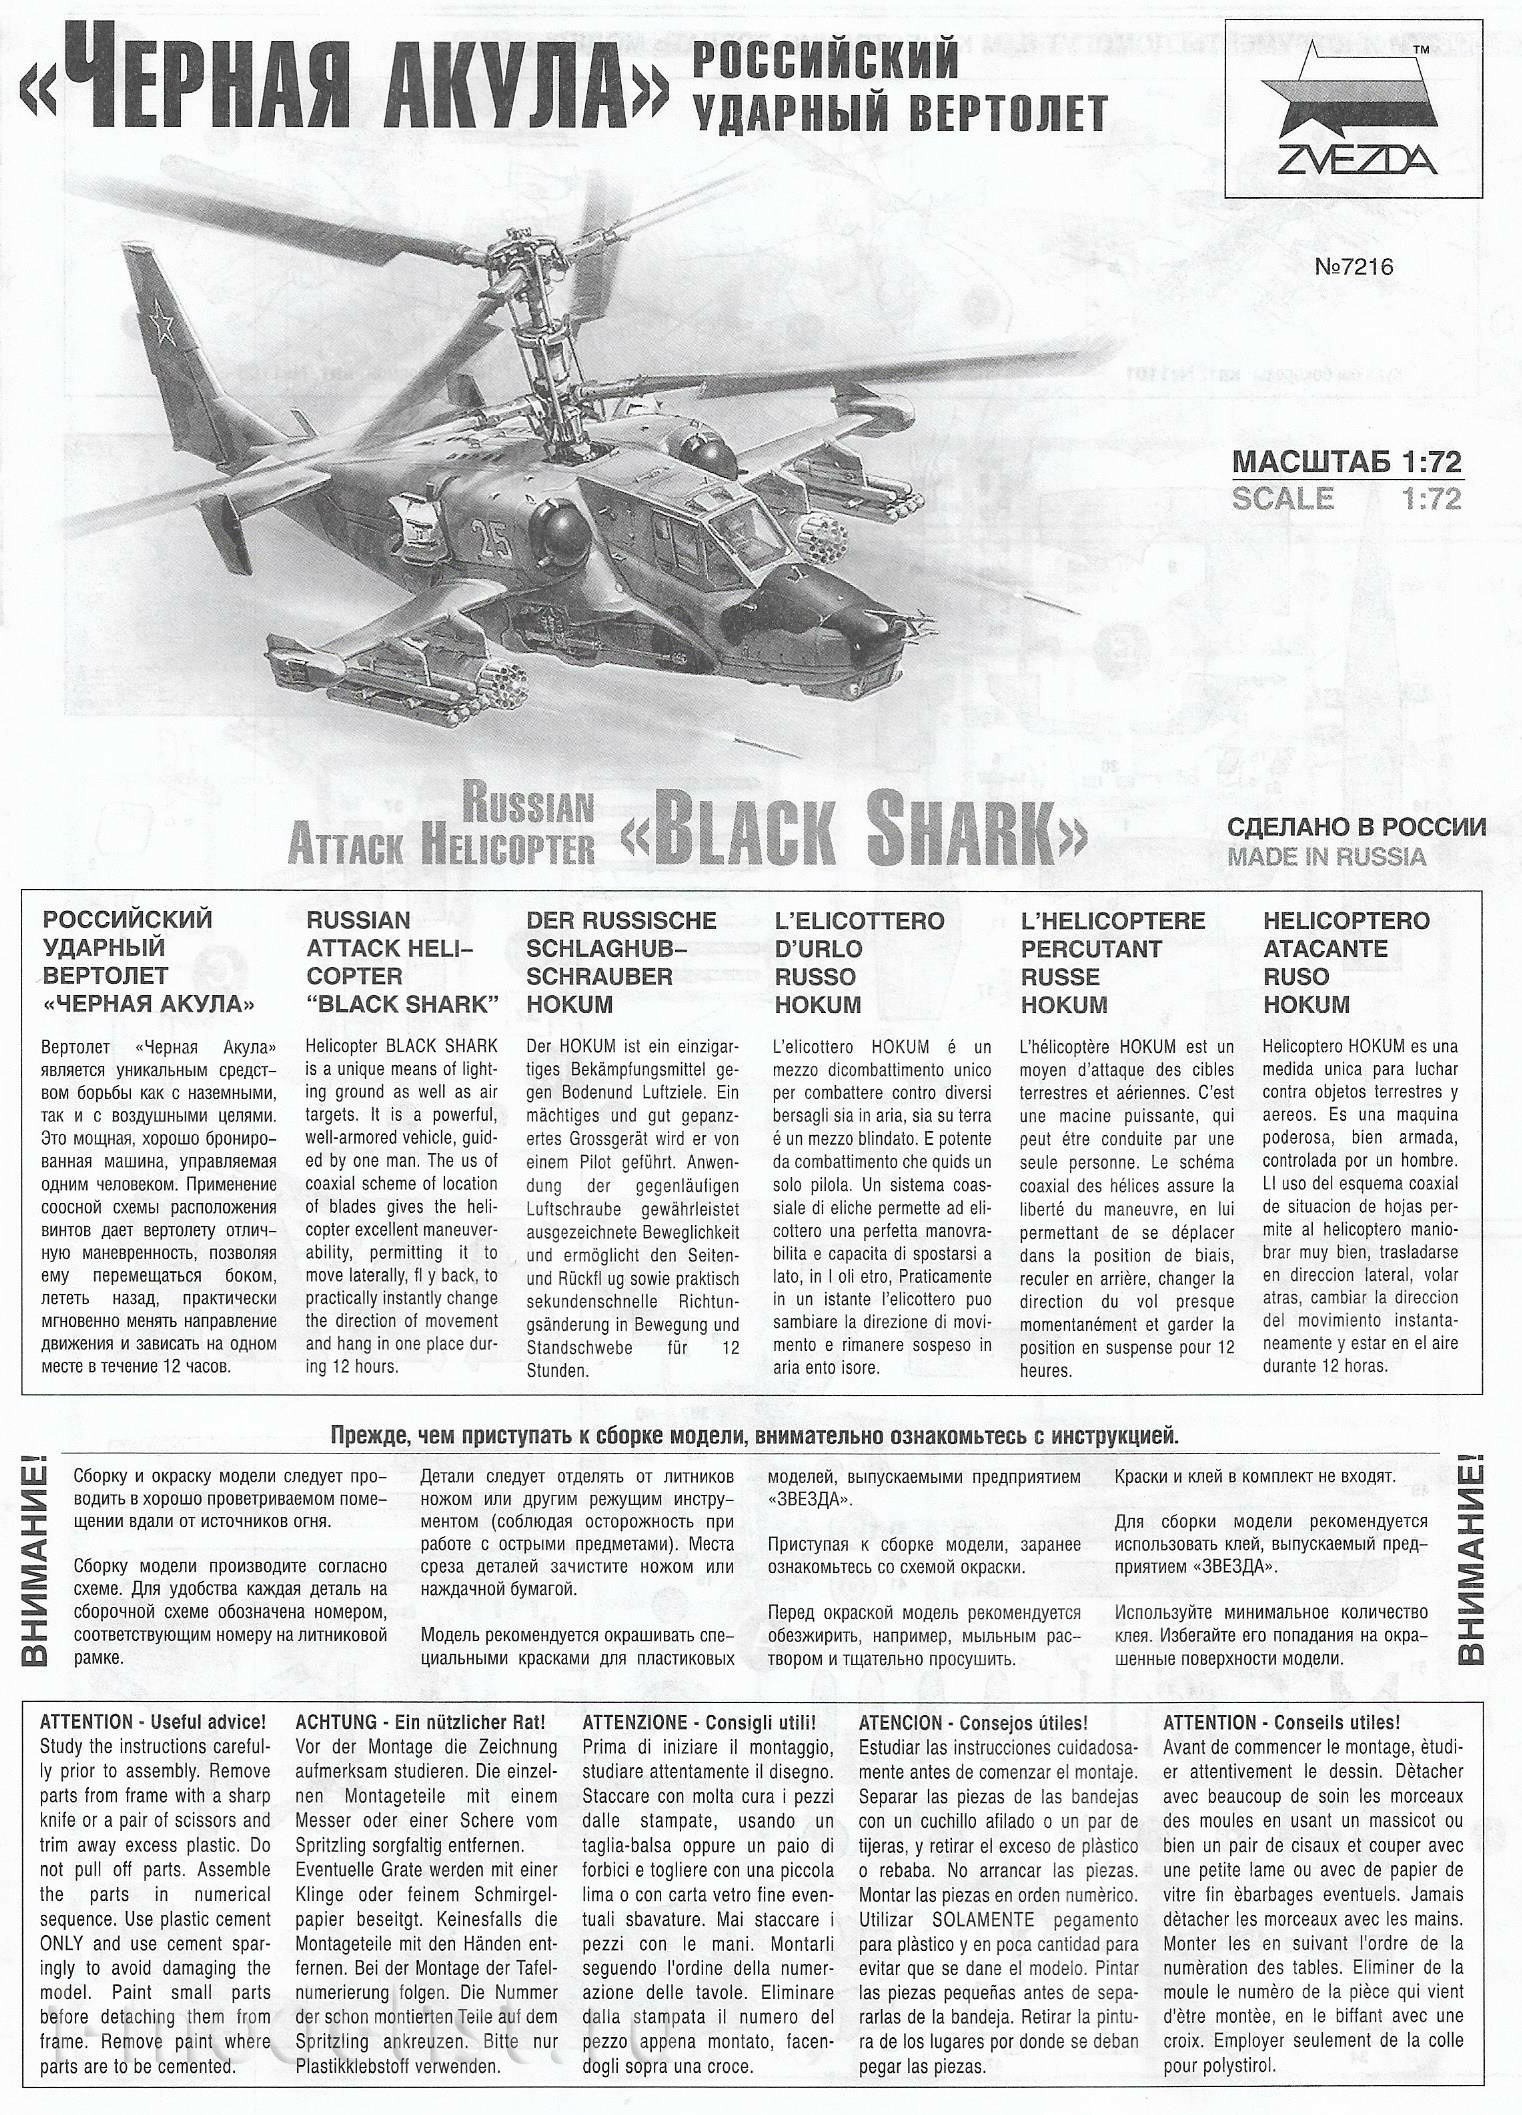 7216 Zvezda 1/72 Black shark Helicopter